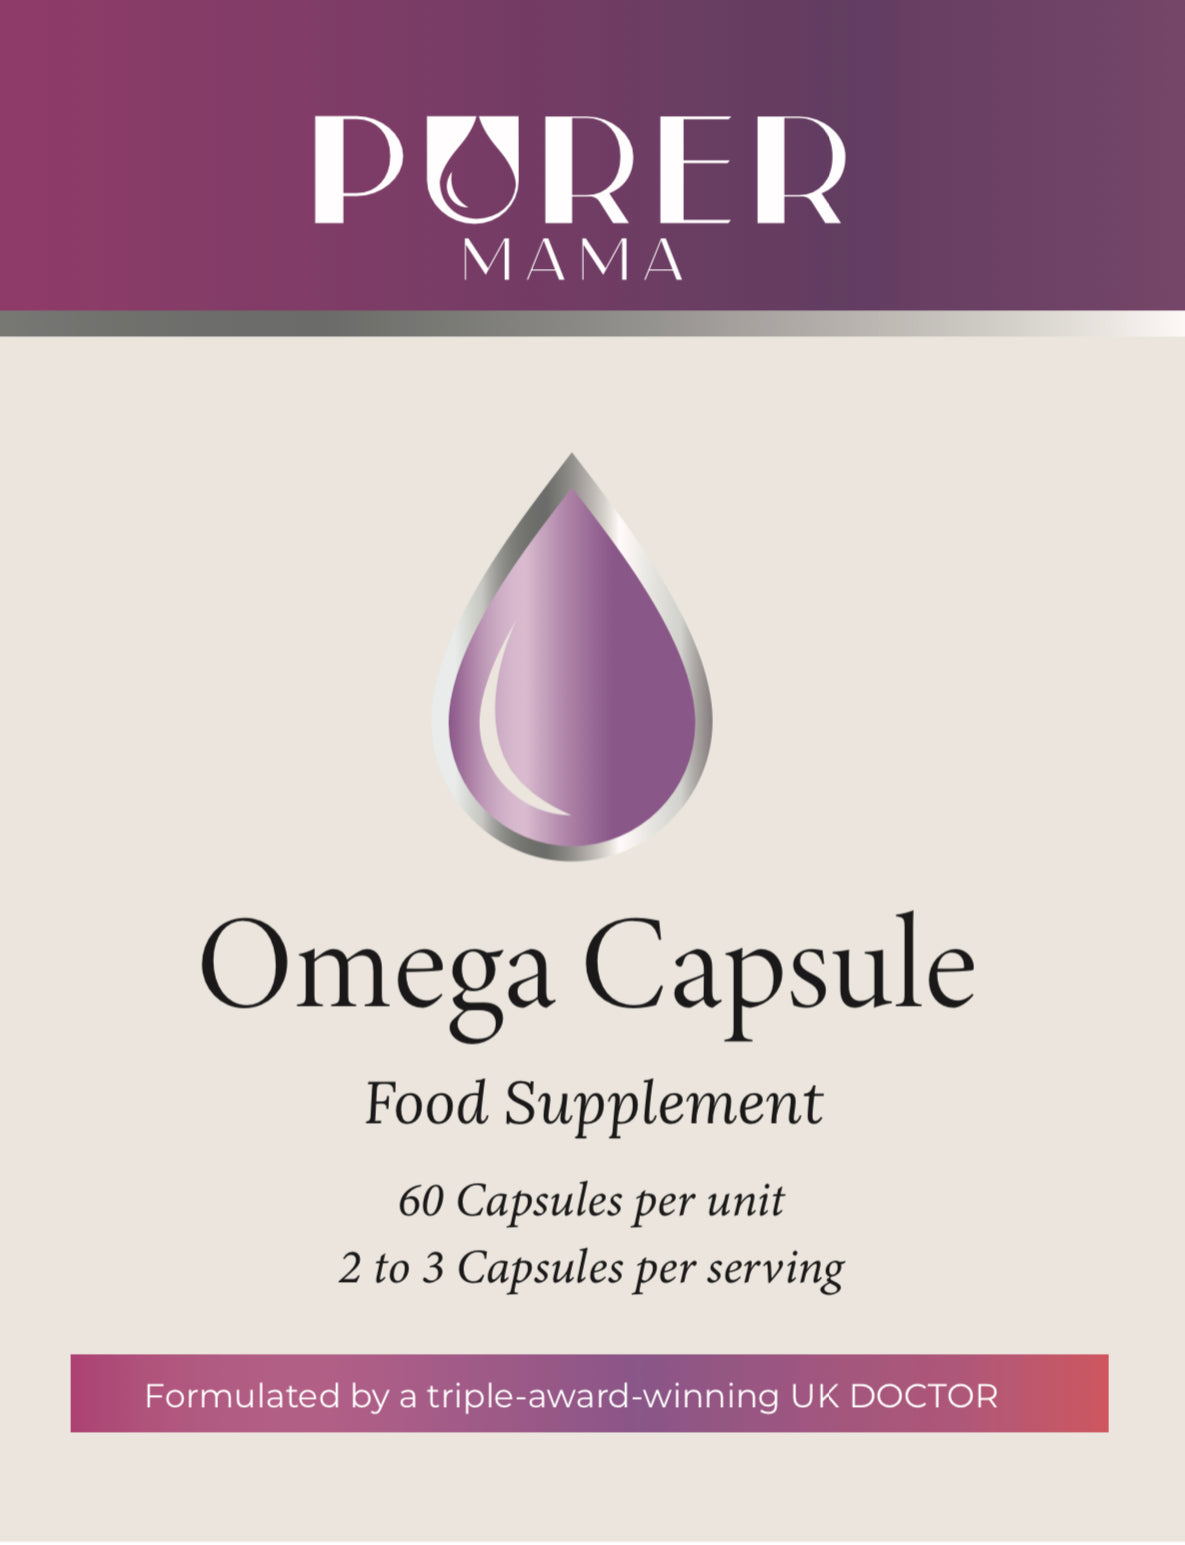 The Omega Capsule